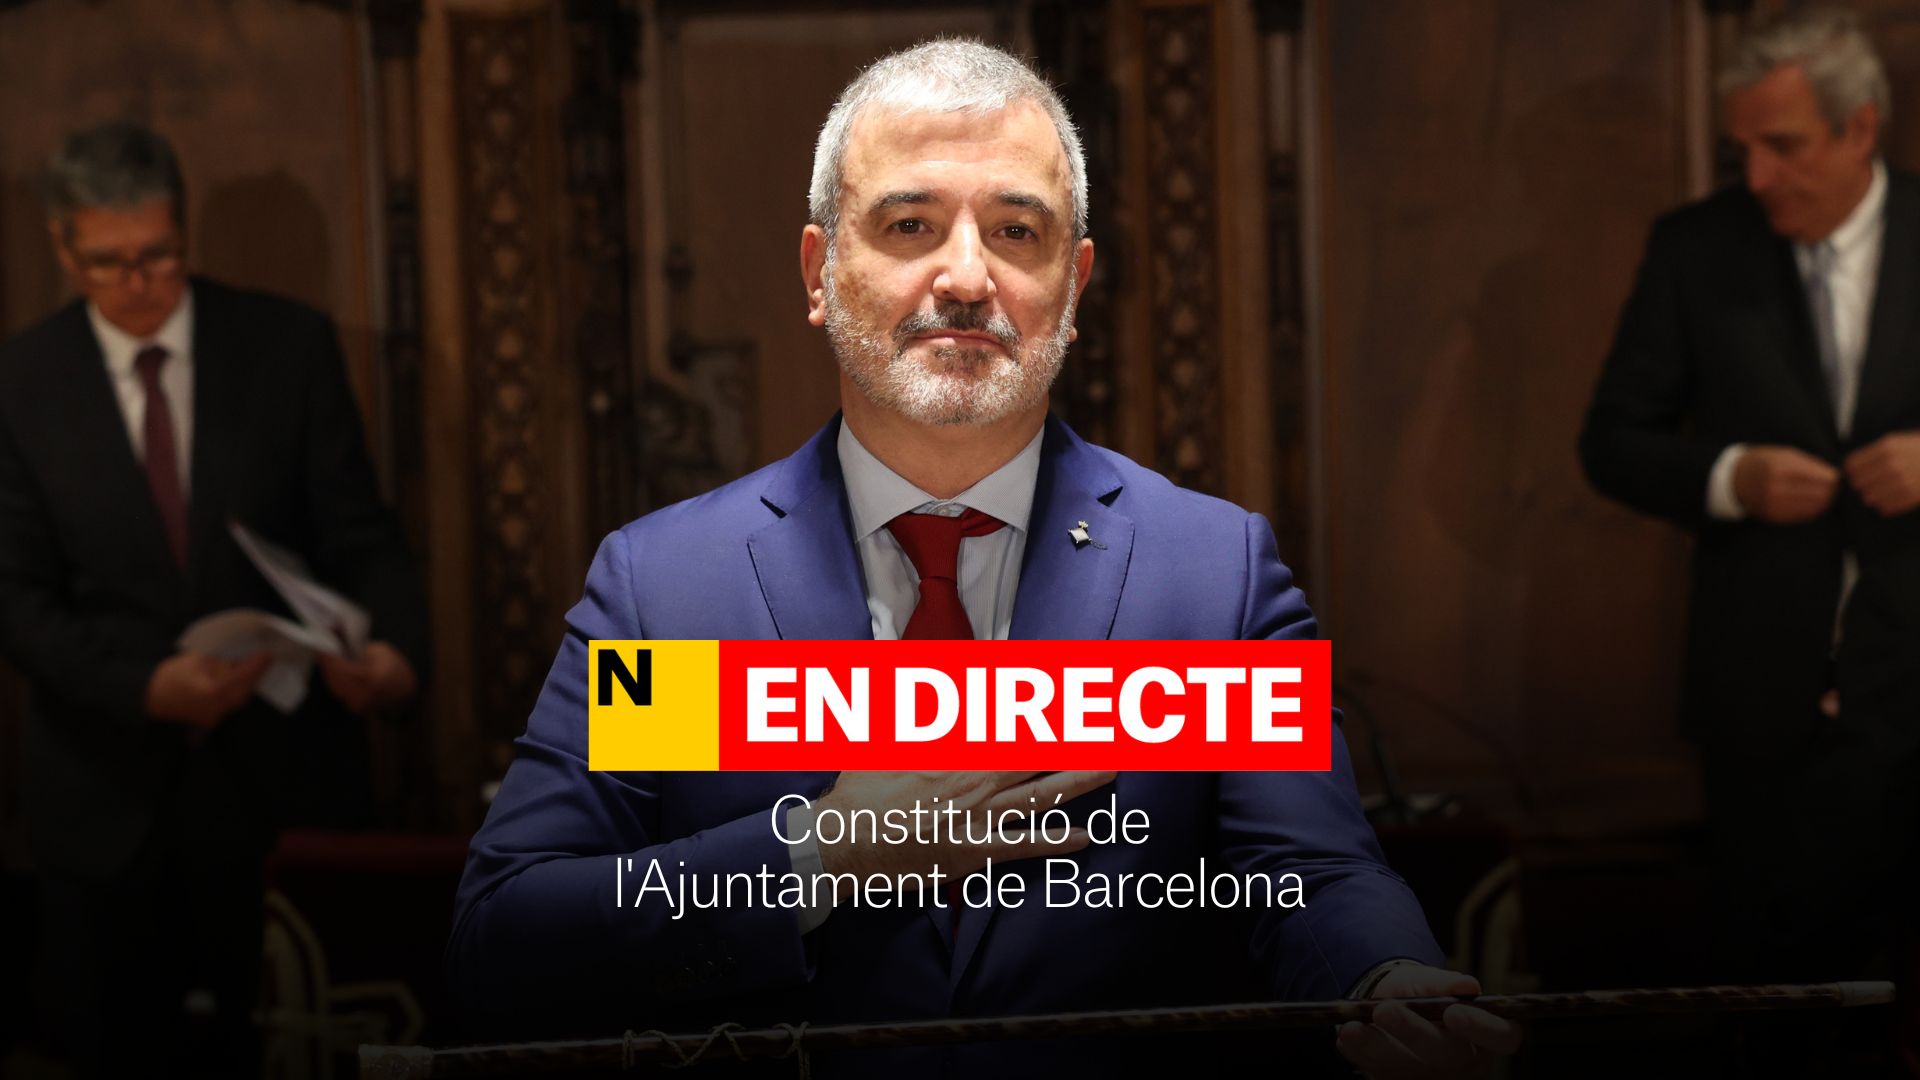 Constitución del Ayuntamiento de Barcelona, DIRECTO | Pleno de investidura y nuevo alcalde de la ciudad